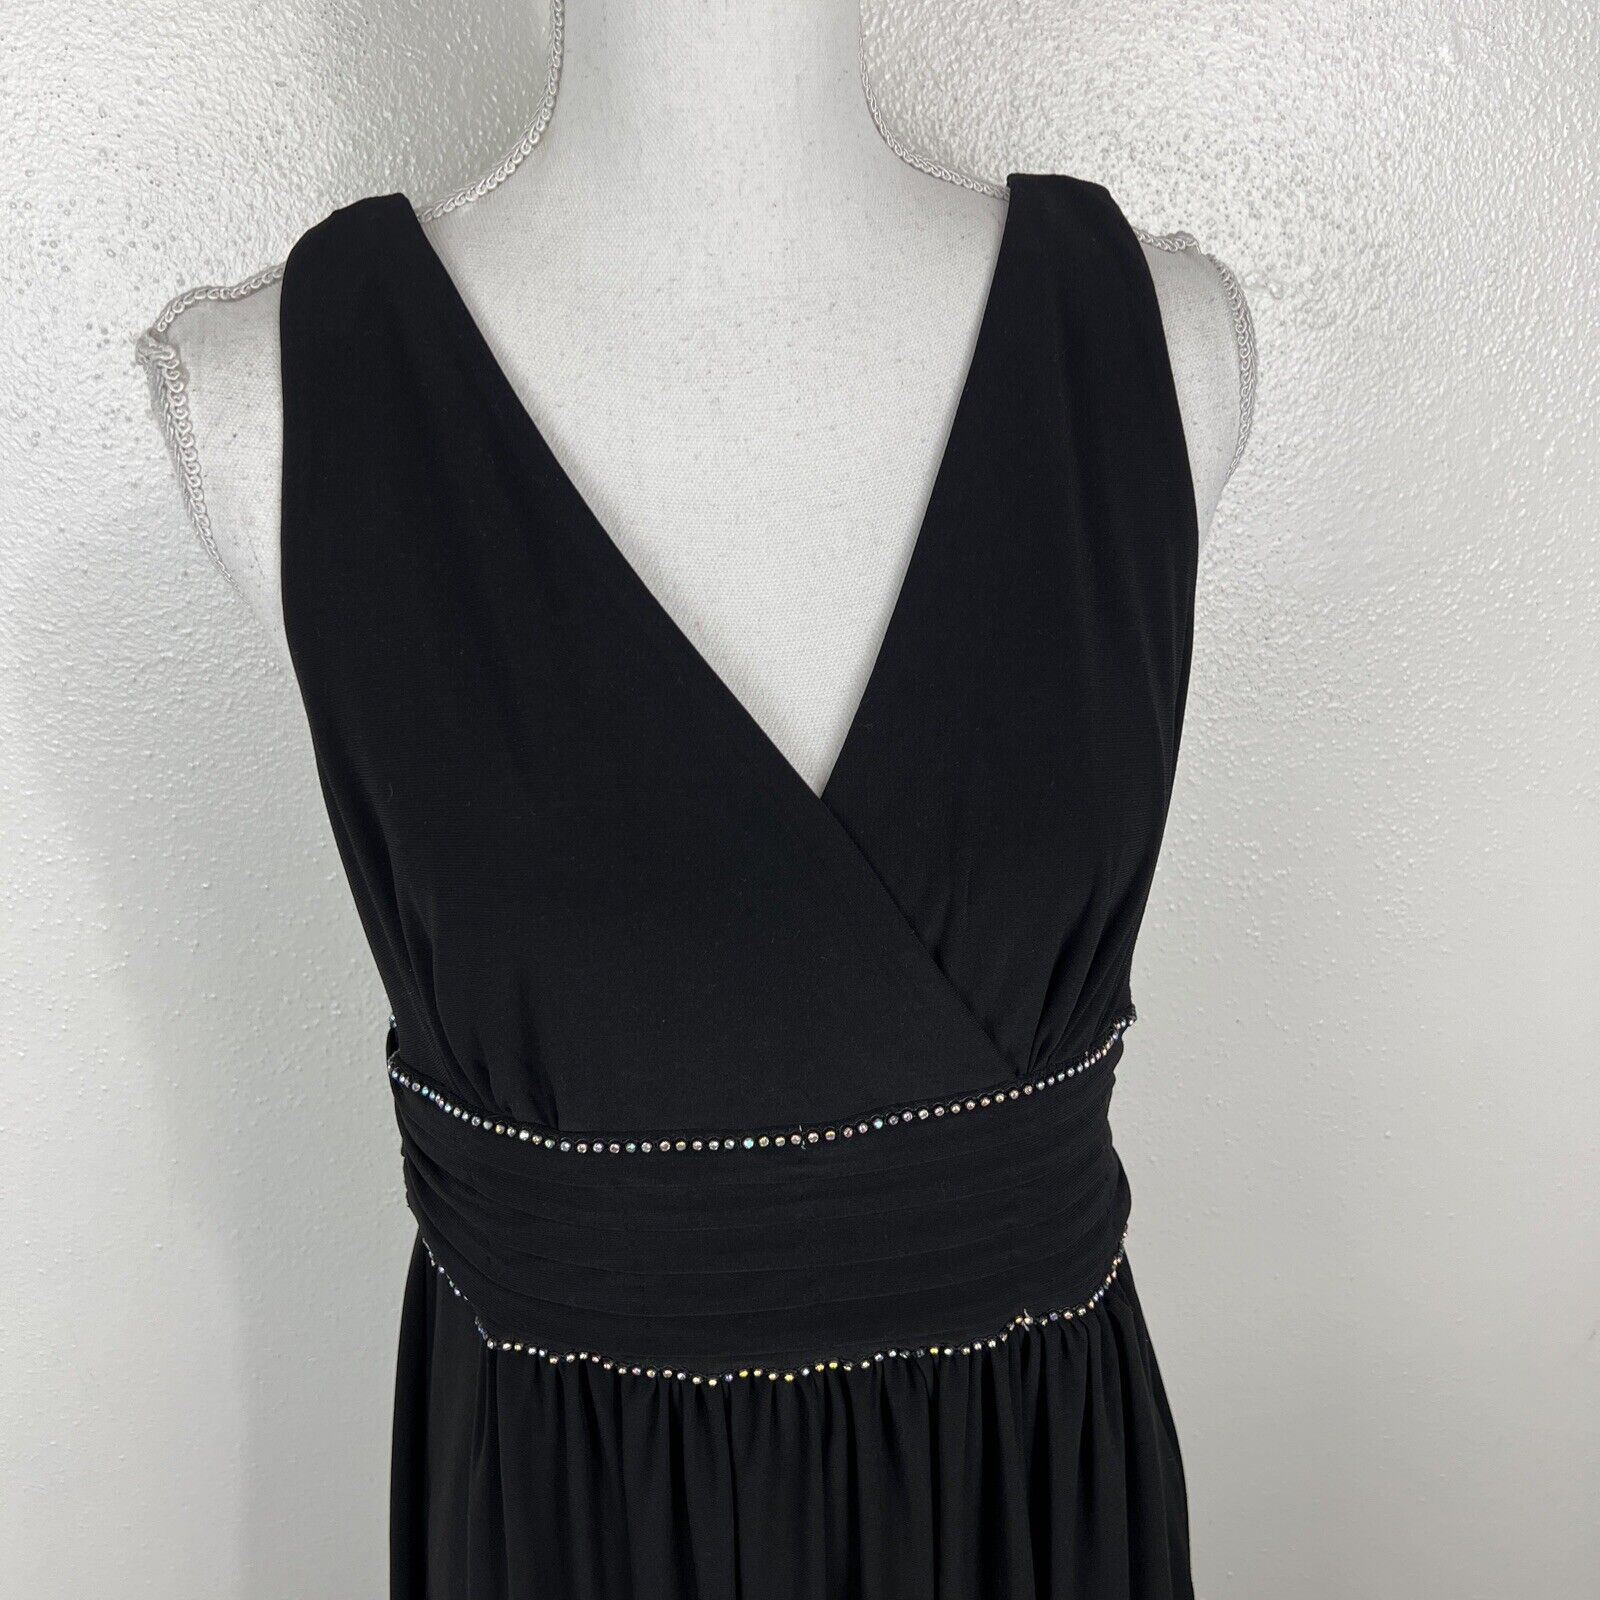 Scarlett Gown Women 12 Black Silver Beaded Dress … - image 6